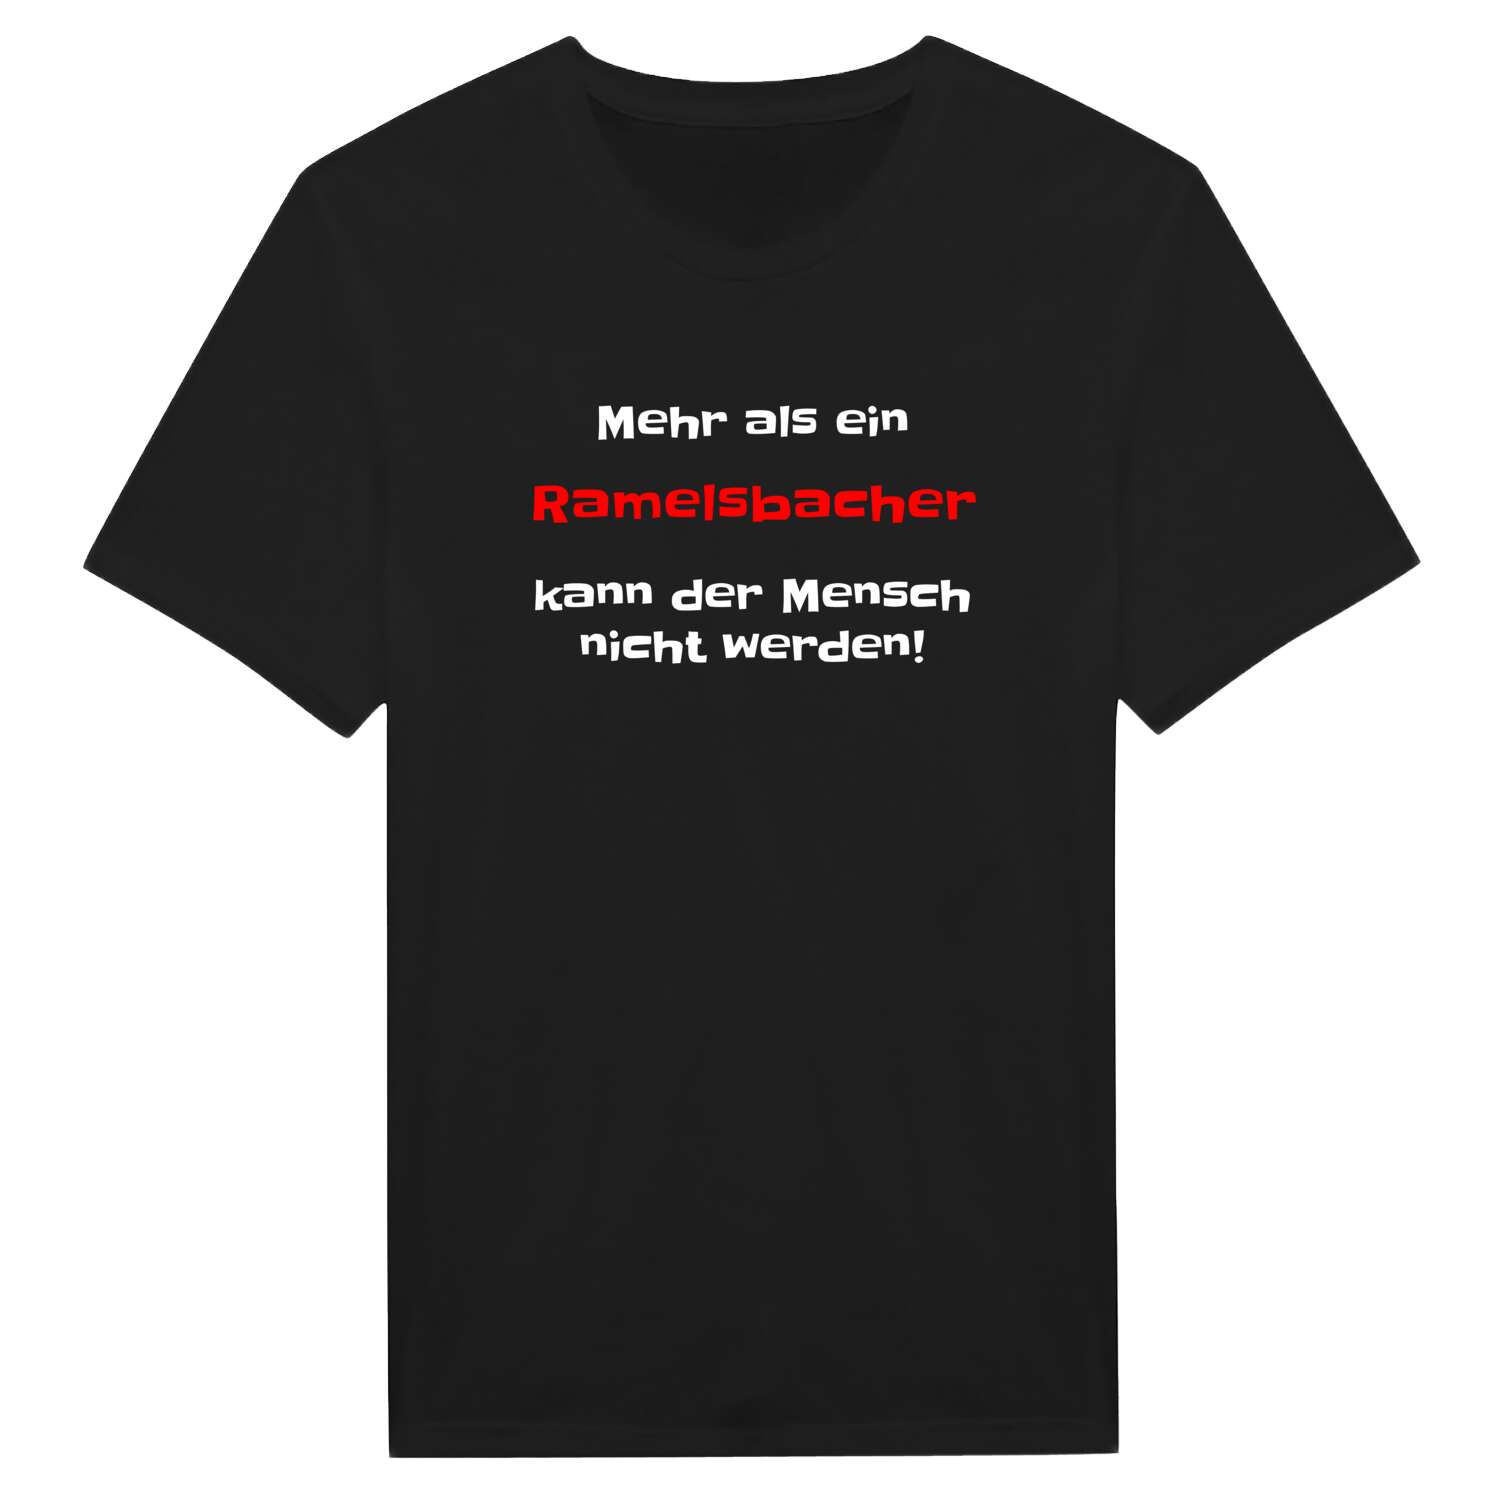 Ramelsbach T-Shirt »Mehr als ein«